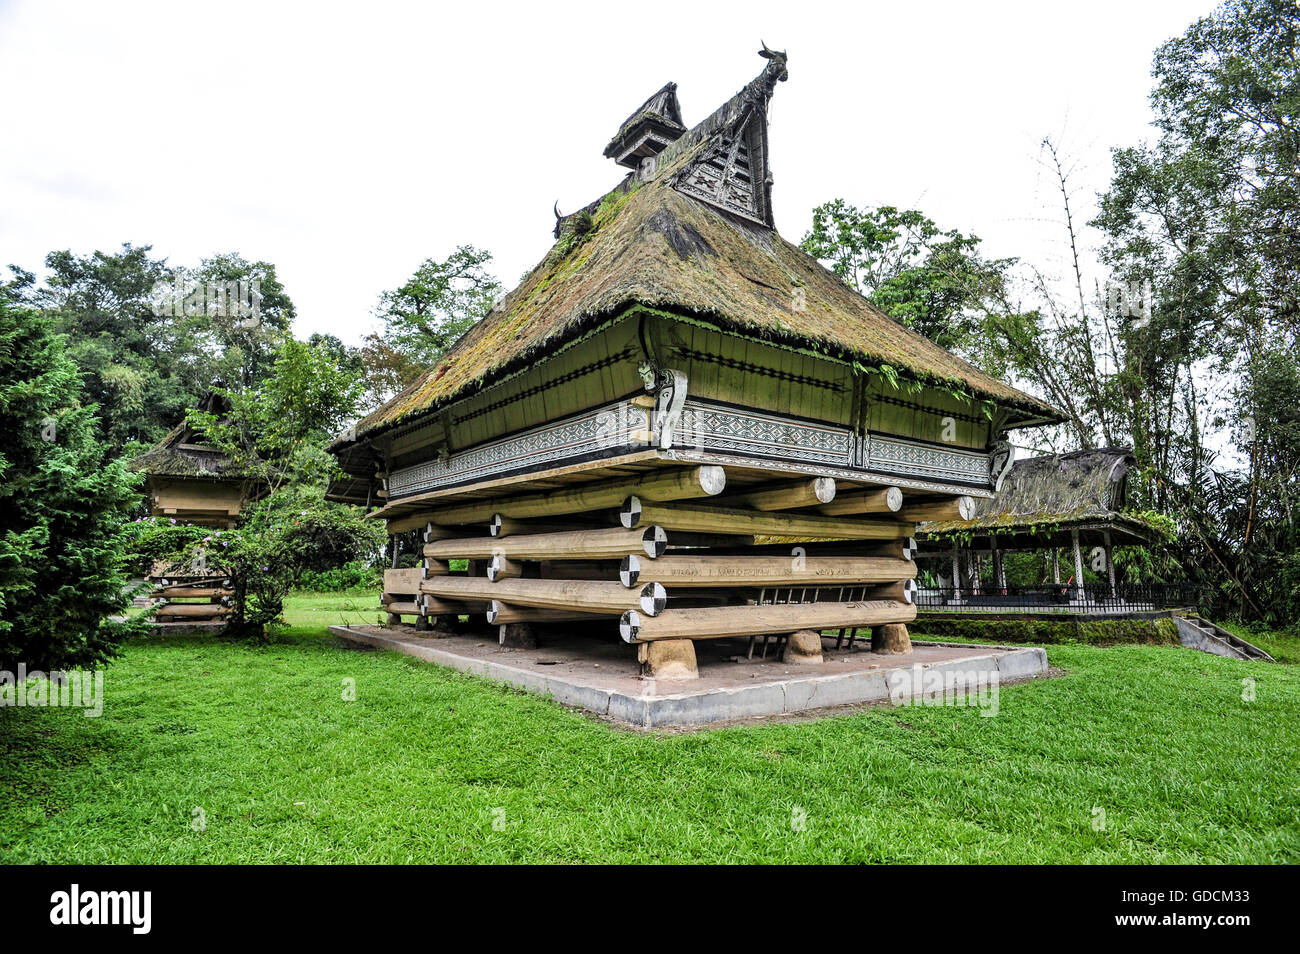 Le palais de la Roi batak de Sumatra, en Indonésie. Batak est le groupe ethnique des personnes vivant dans la partie nord de l'al. Banque D'Images